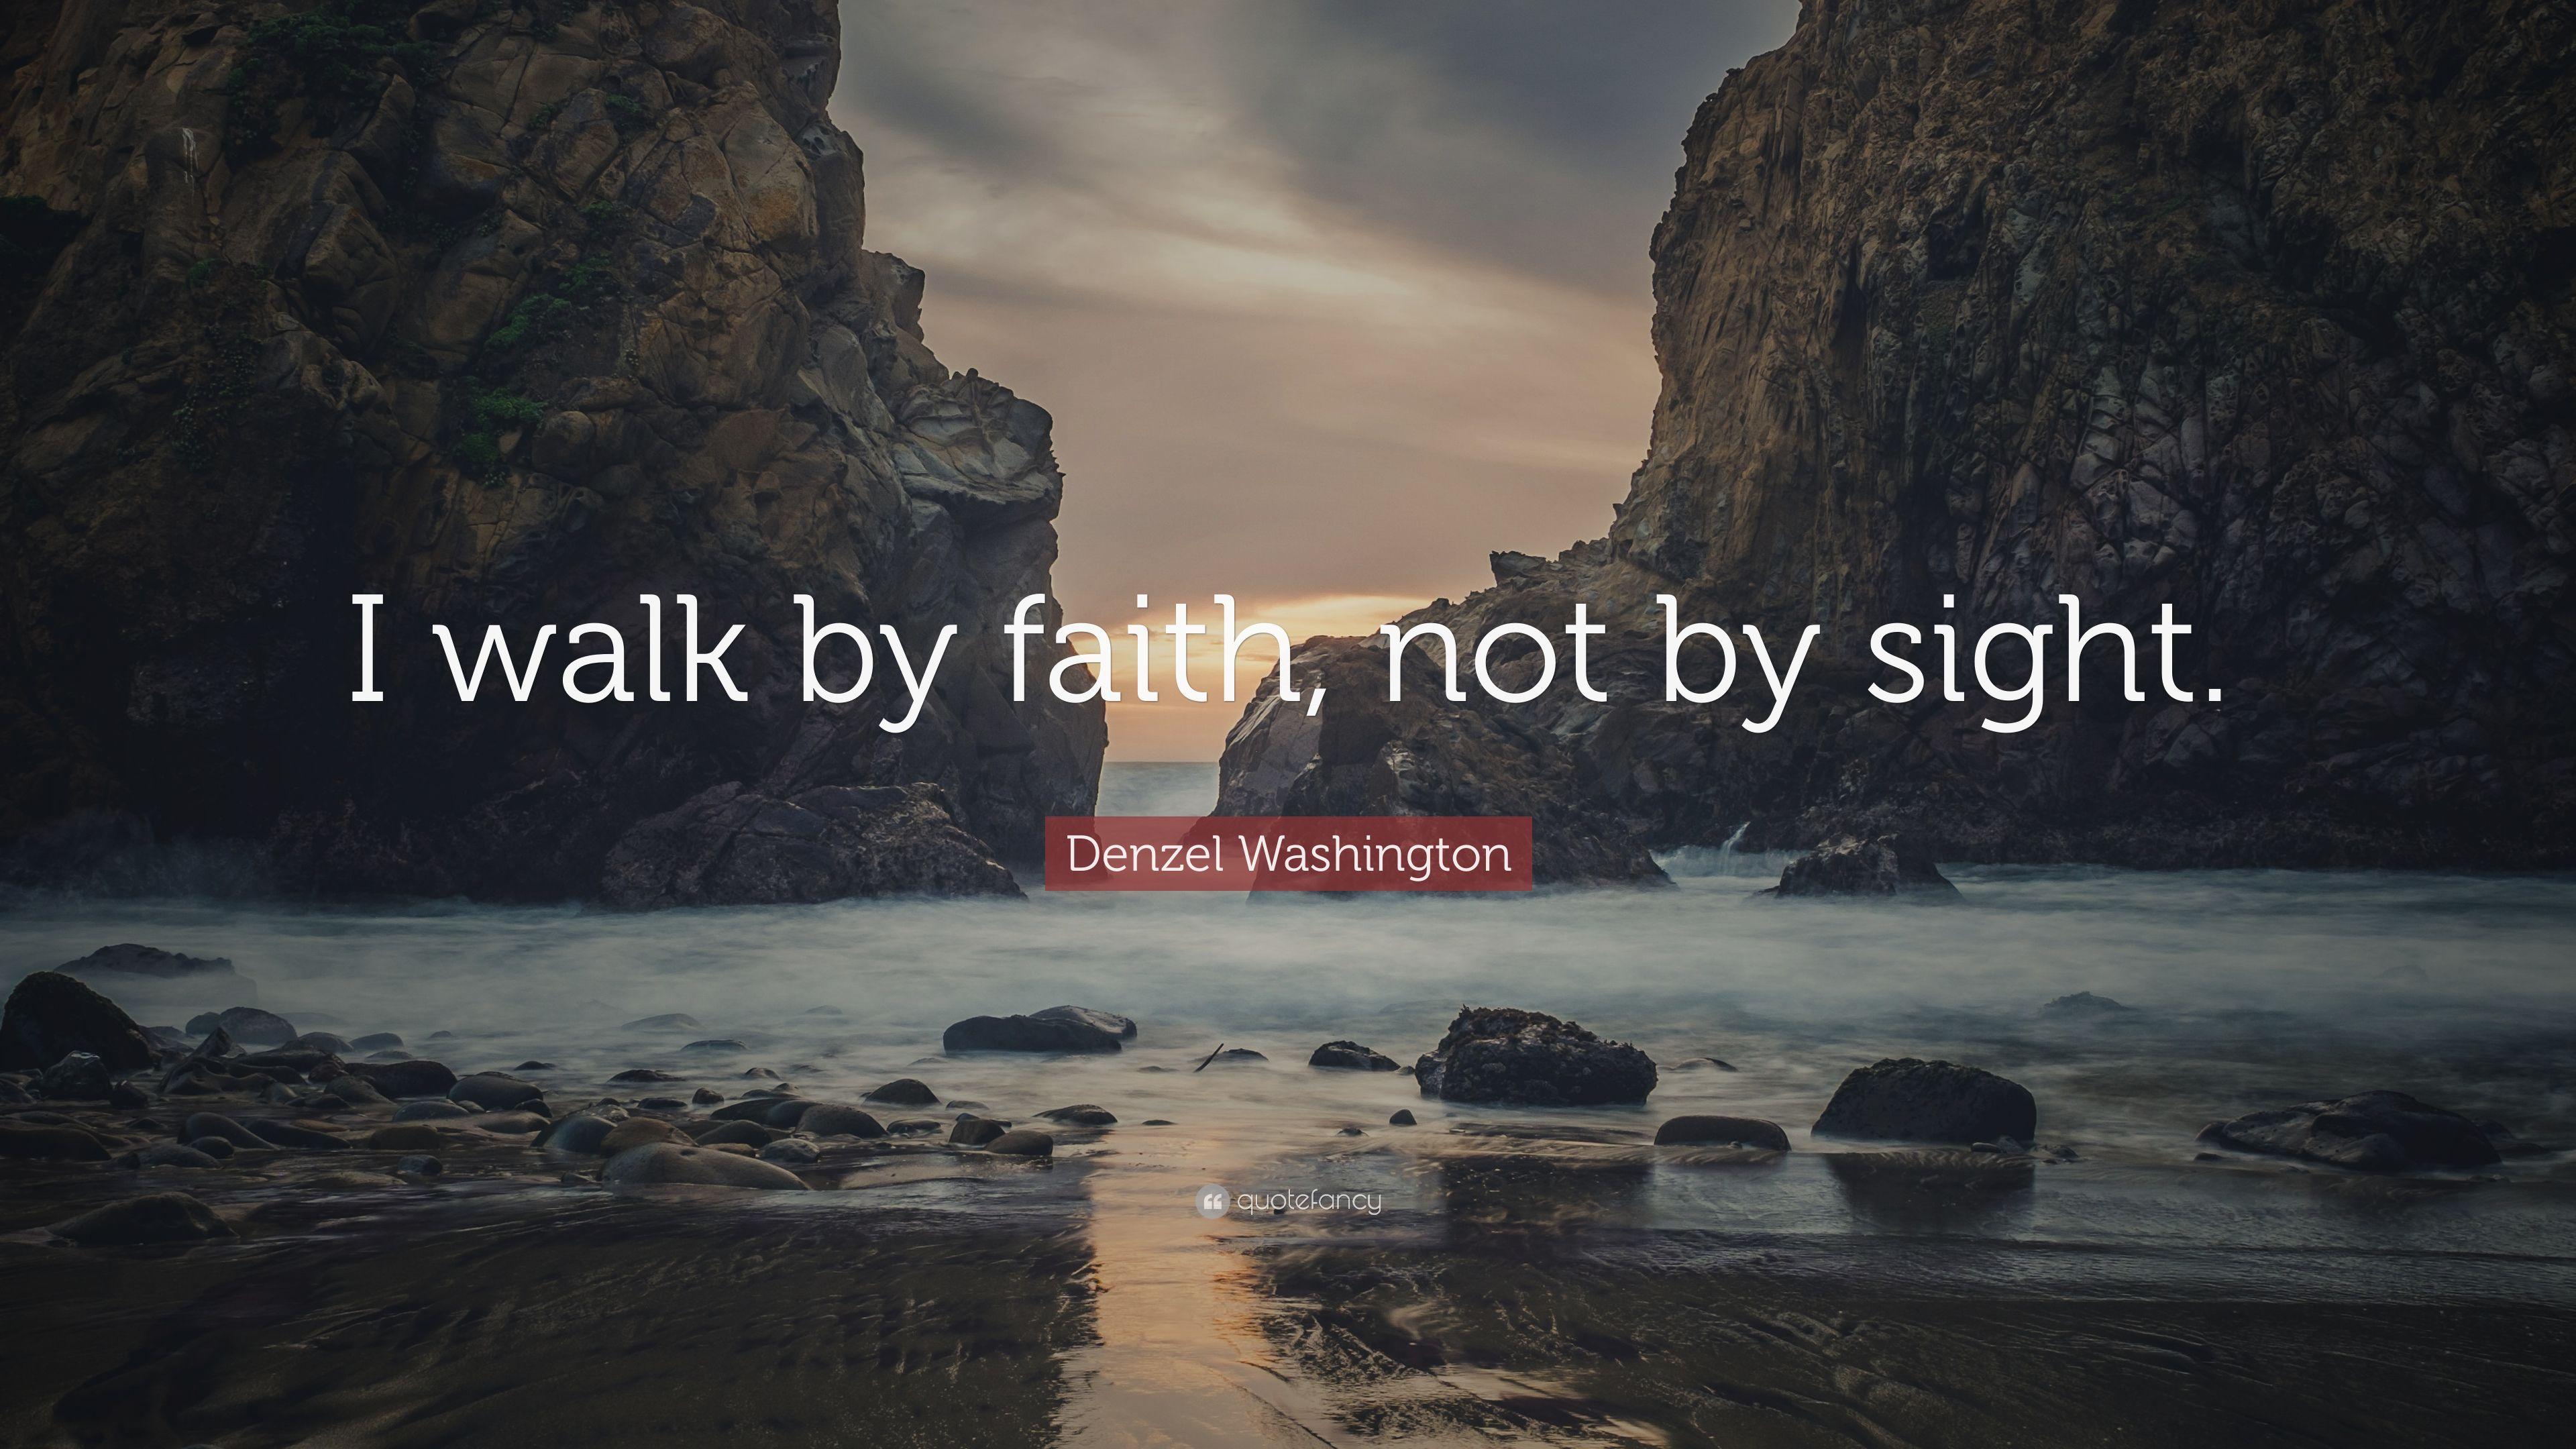 Denzel Washington Quote: “I walk by faith, not by sight.” 7